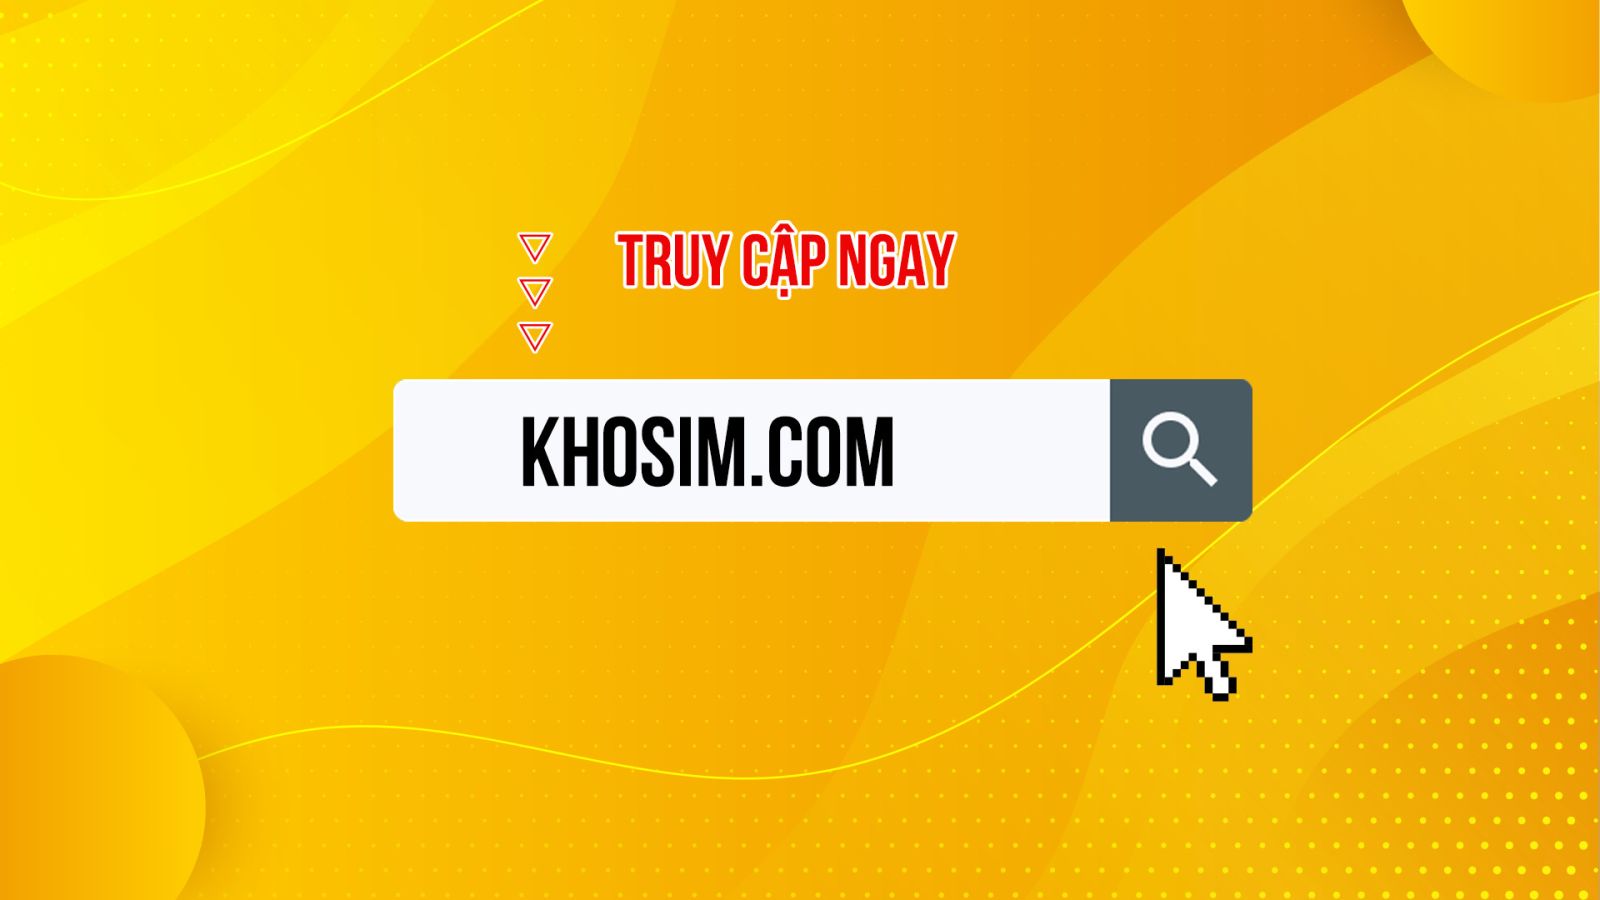 Khosim.com cung cấp nhiều sim đến từ các nhà mạng khác nhau